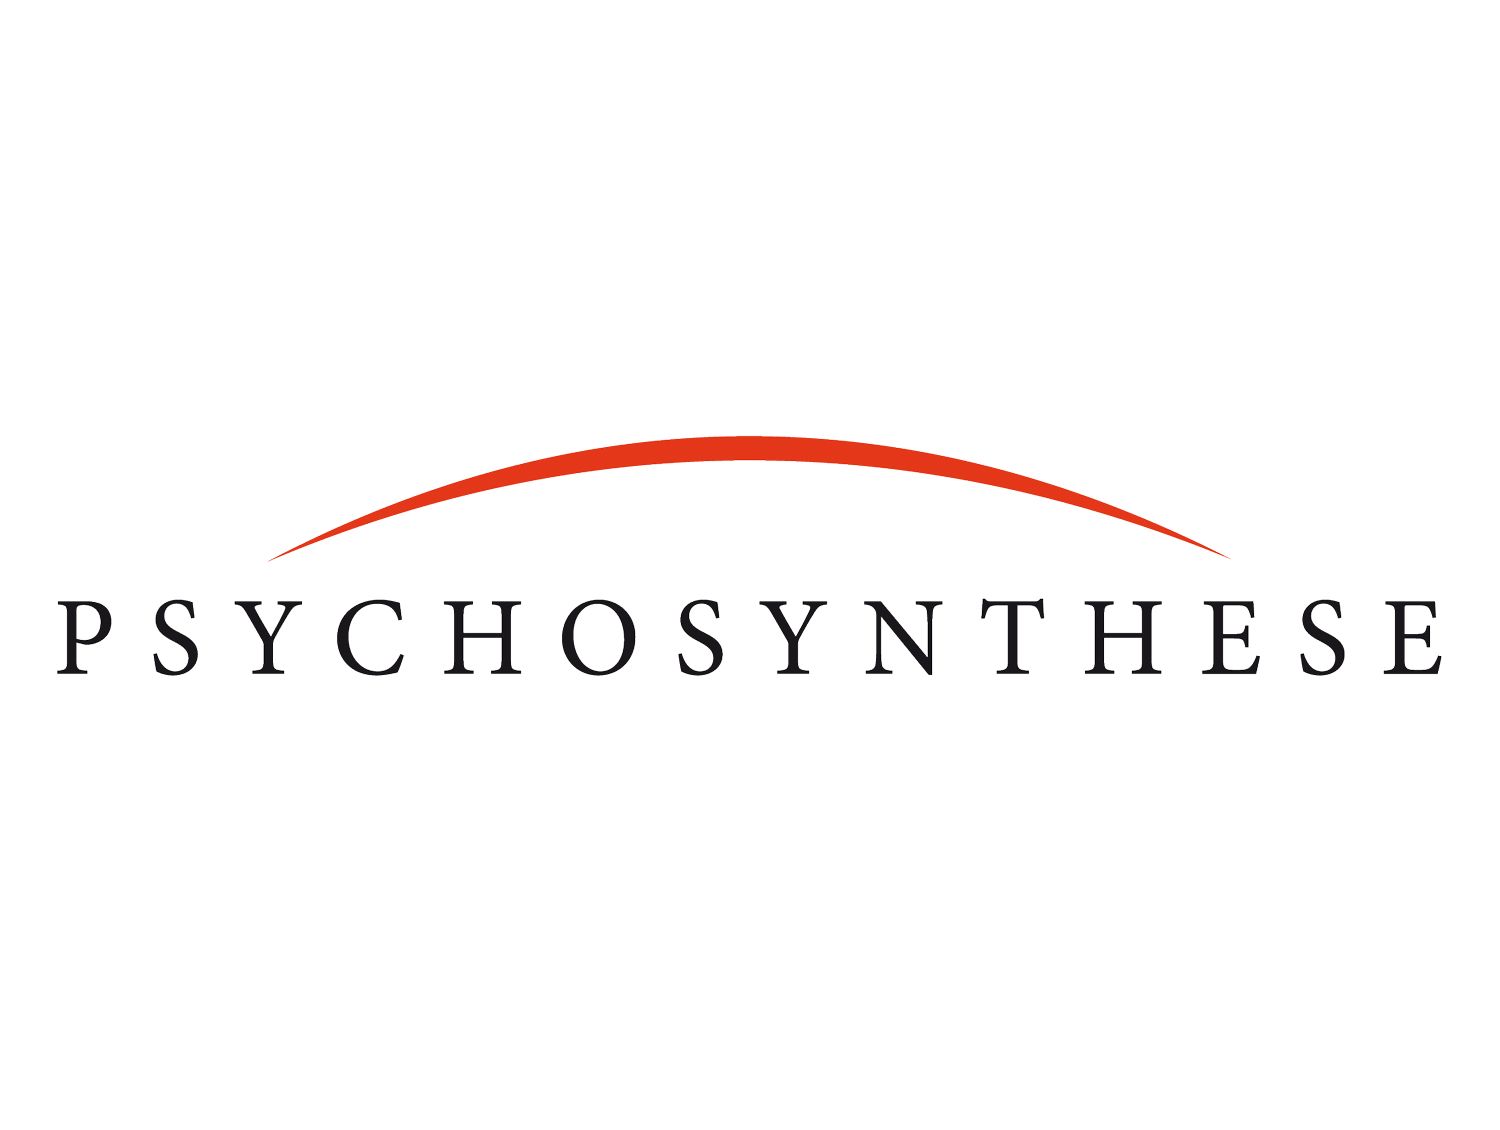 La psychosynthèse